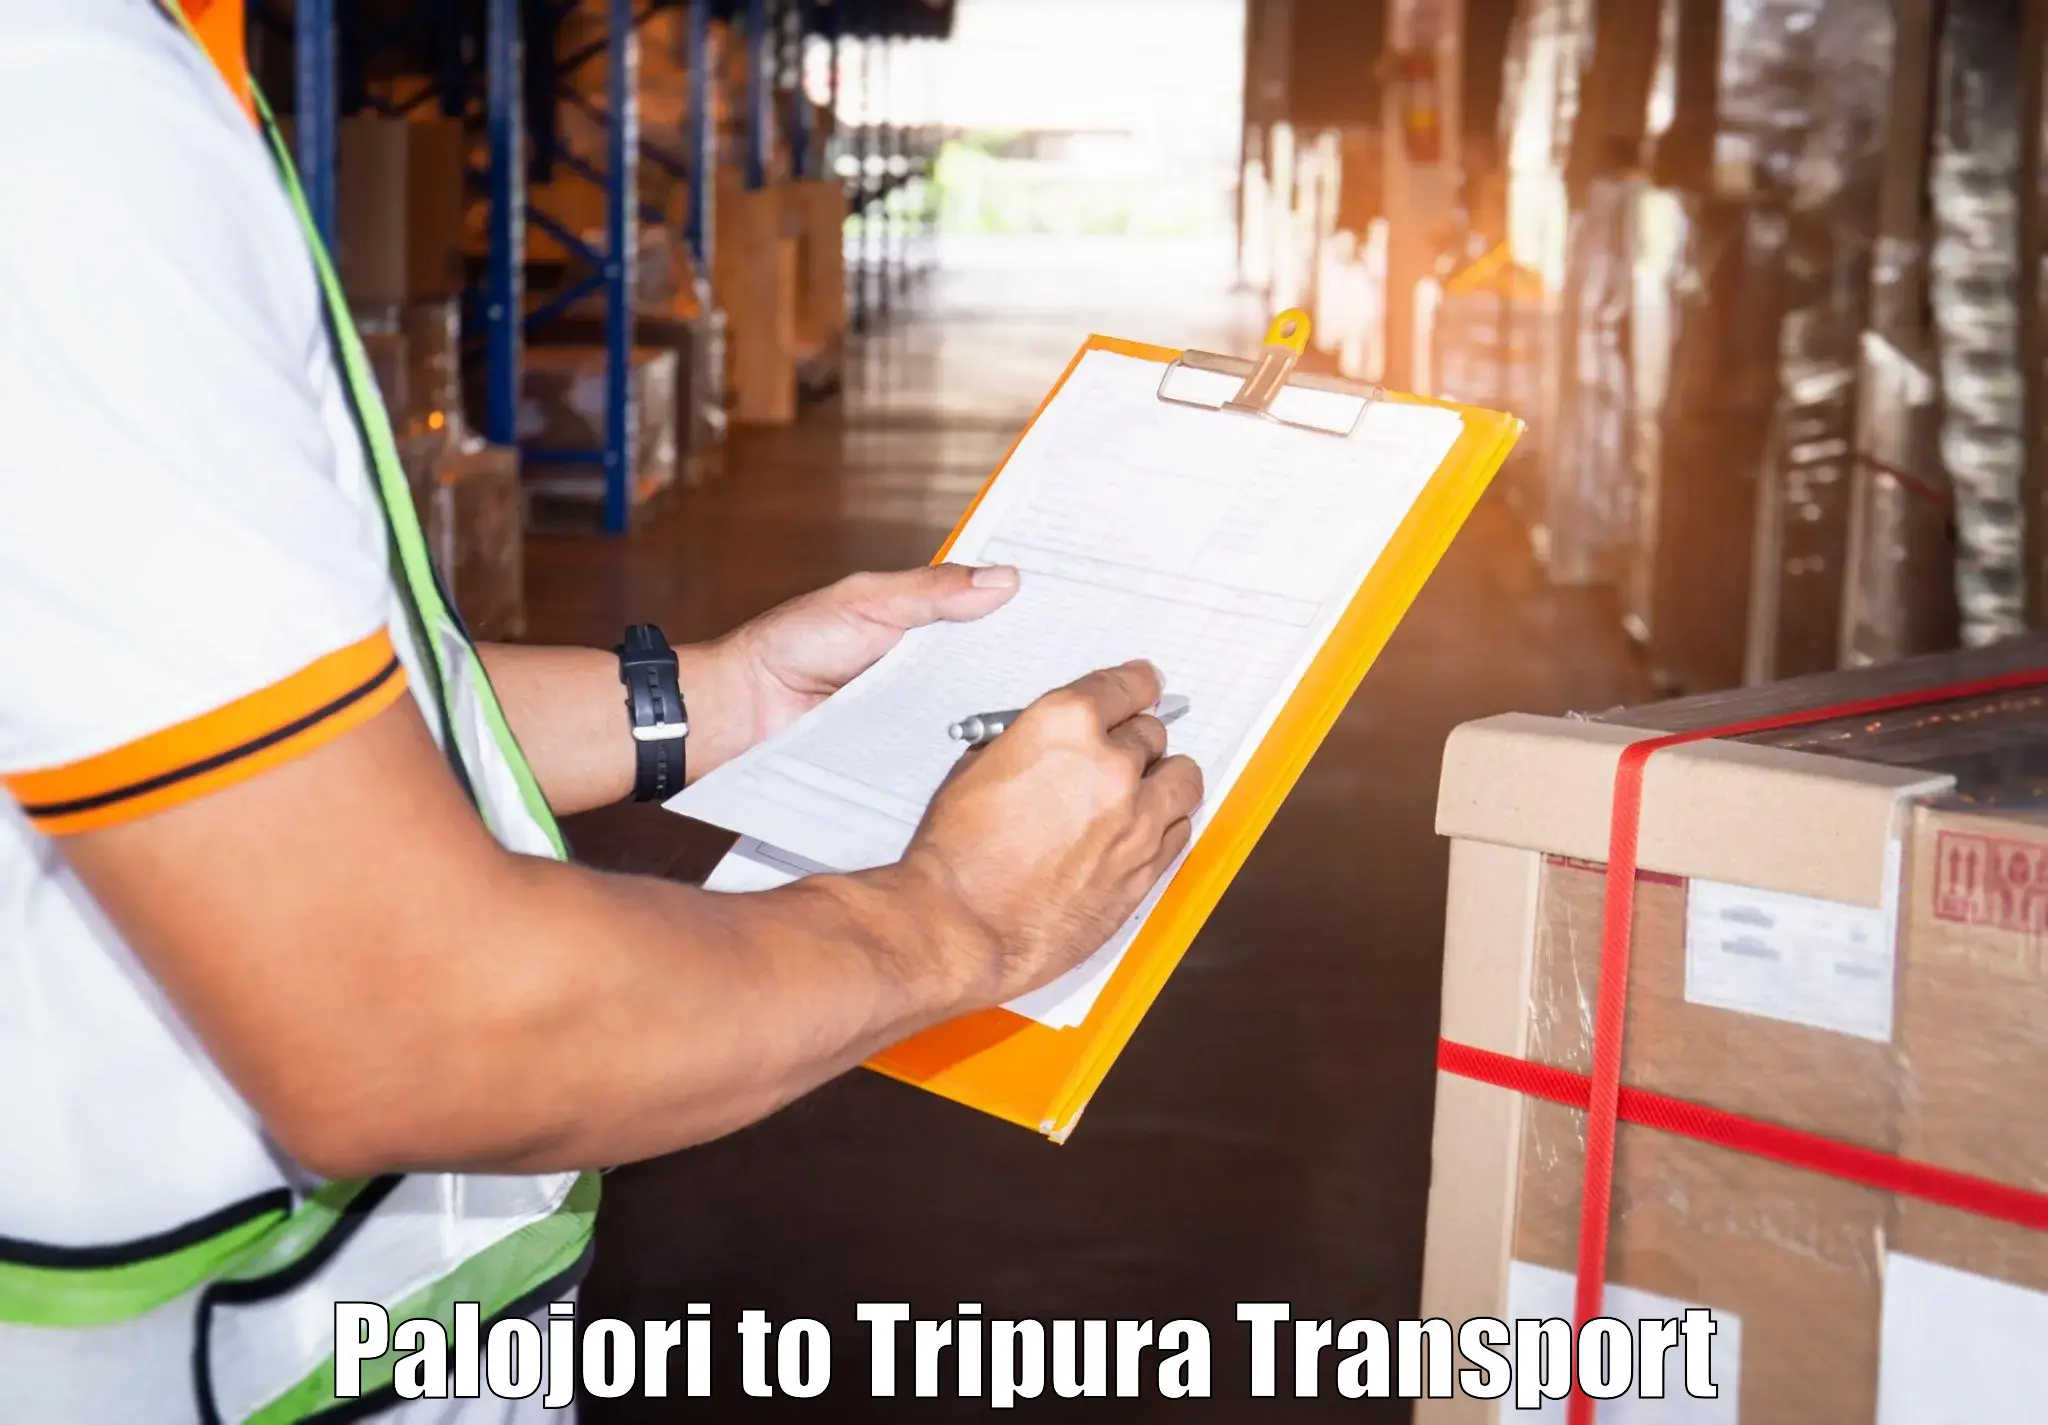 Two wheeler parcel service Palojori to Kailashahar